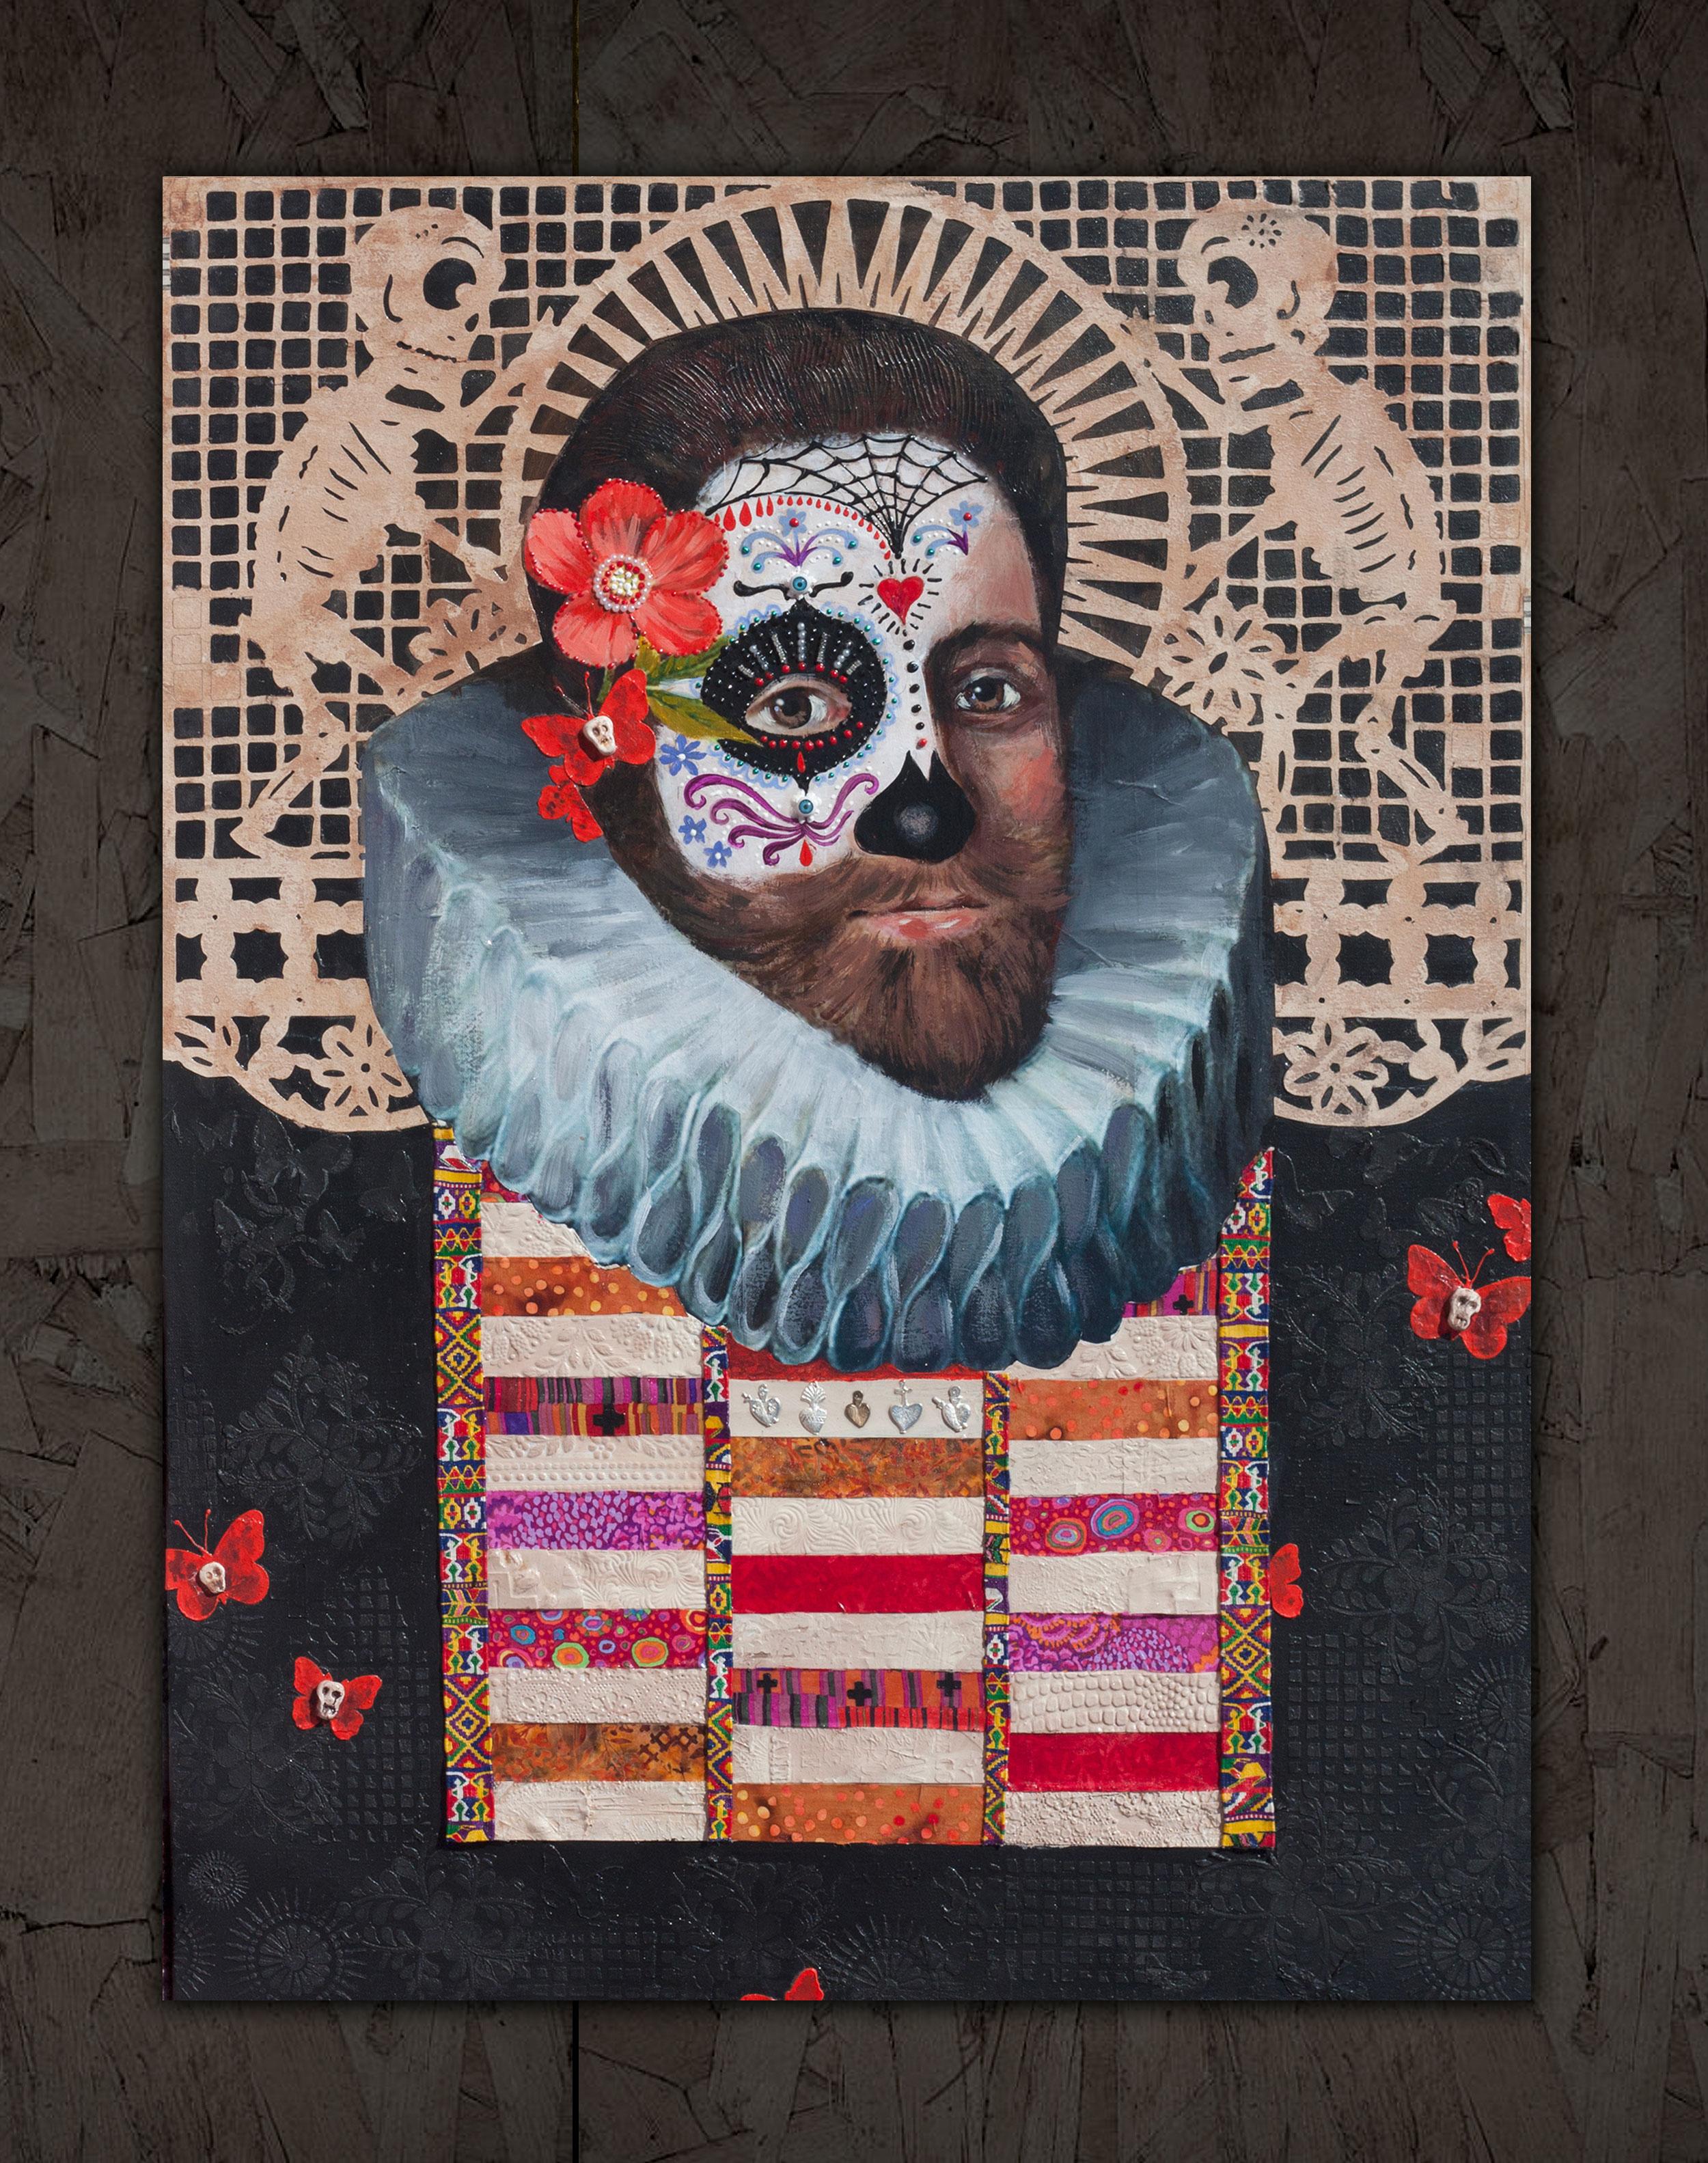 <p>Commentaires de l'artiste<br>L'artiste Darlene McElroy a créé un portrait complexe et amusant à base de techniques mixtes, avec des références aux motifs mexicains du jour des morts et à l'art de la Renaissance : 